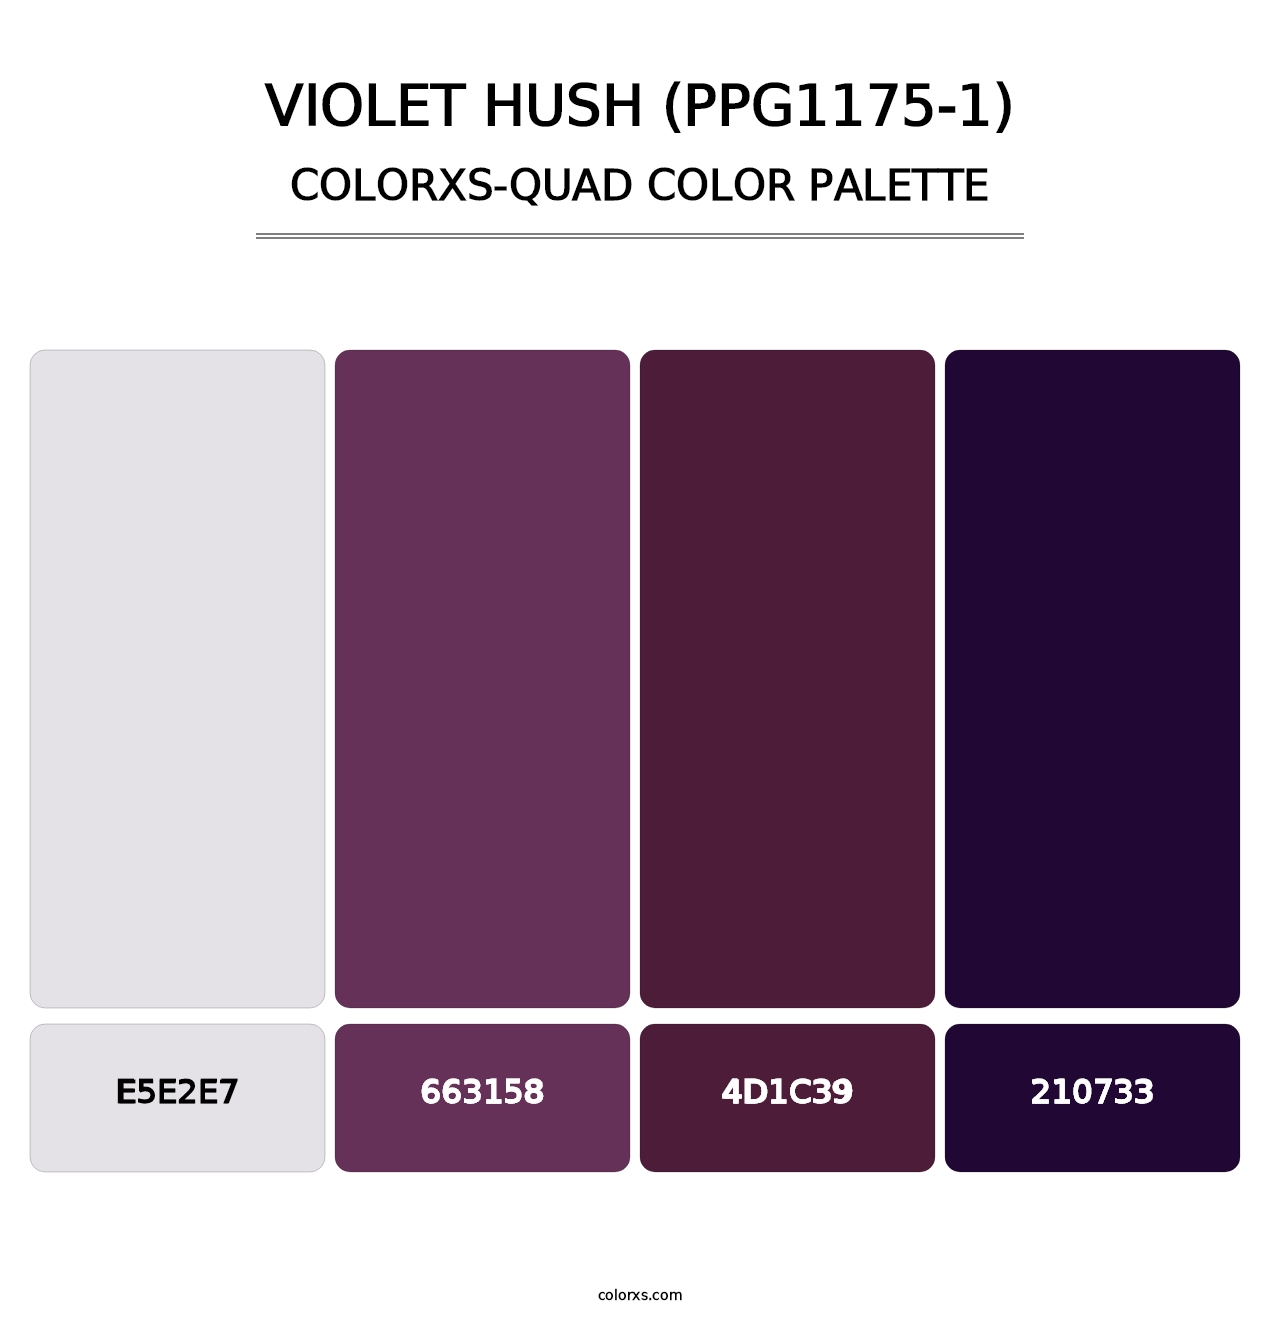 Violet Hush (PPG1175-1) - Colorxs Quad Palette